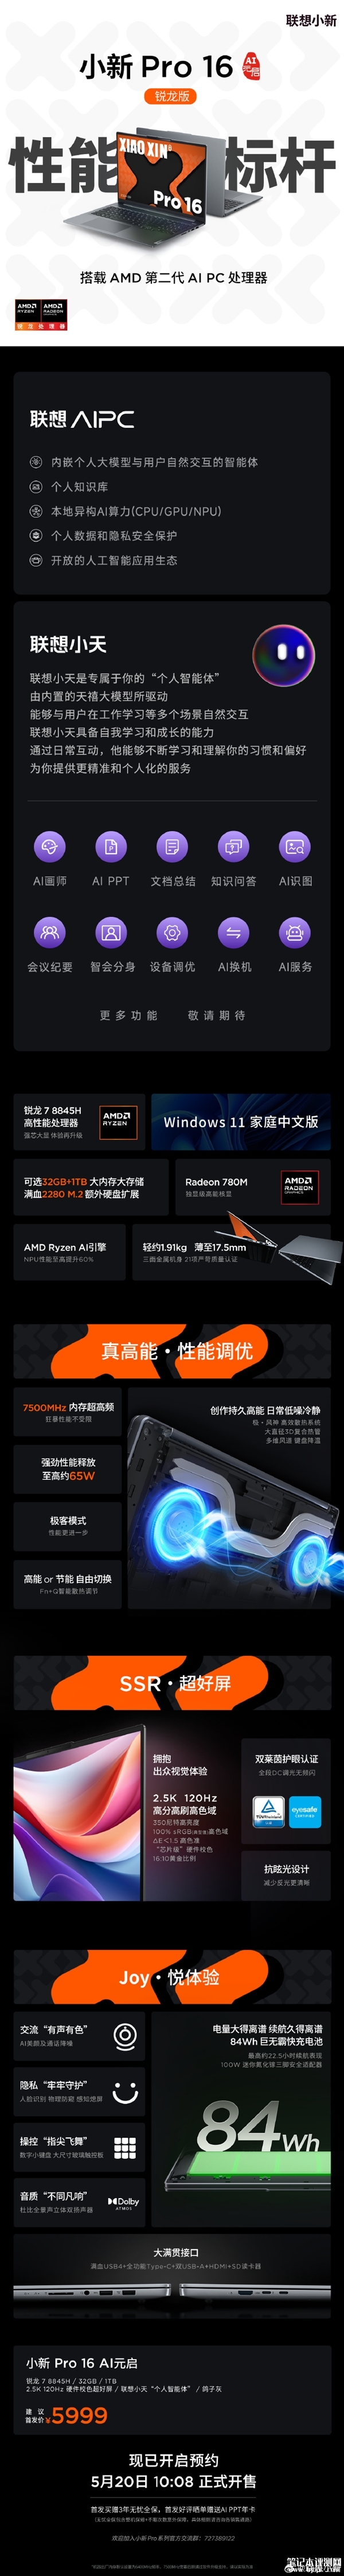 联想小新Pro 16上市 预装联想小天售价5999元，权威笔记本评测网站,www.dnpcw.com